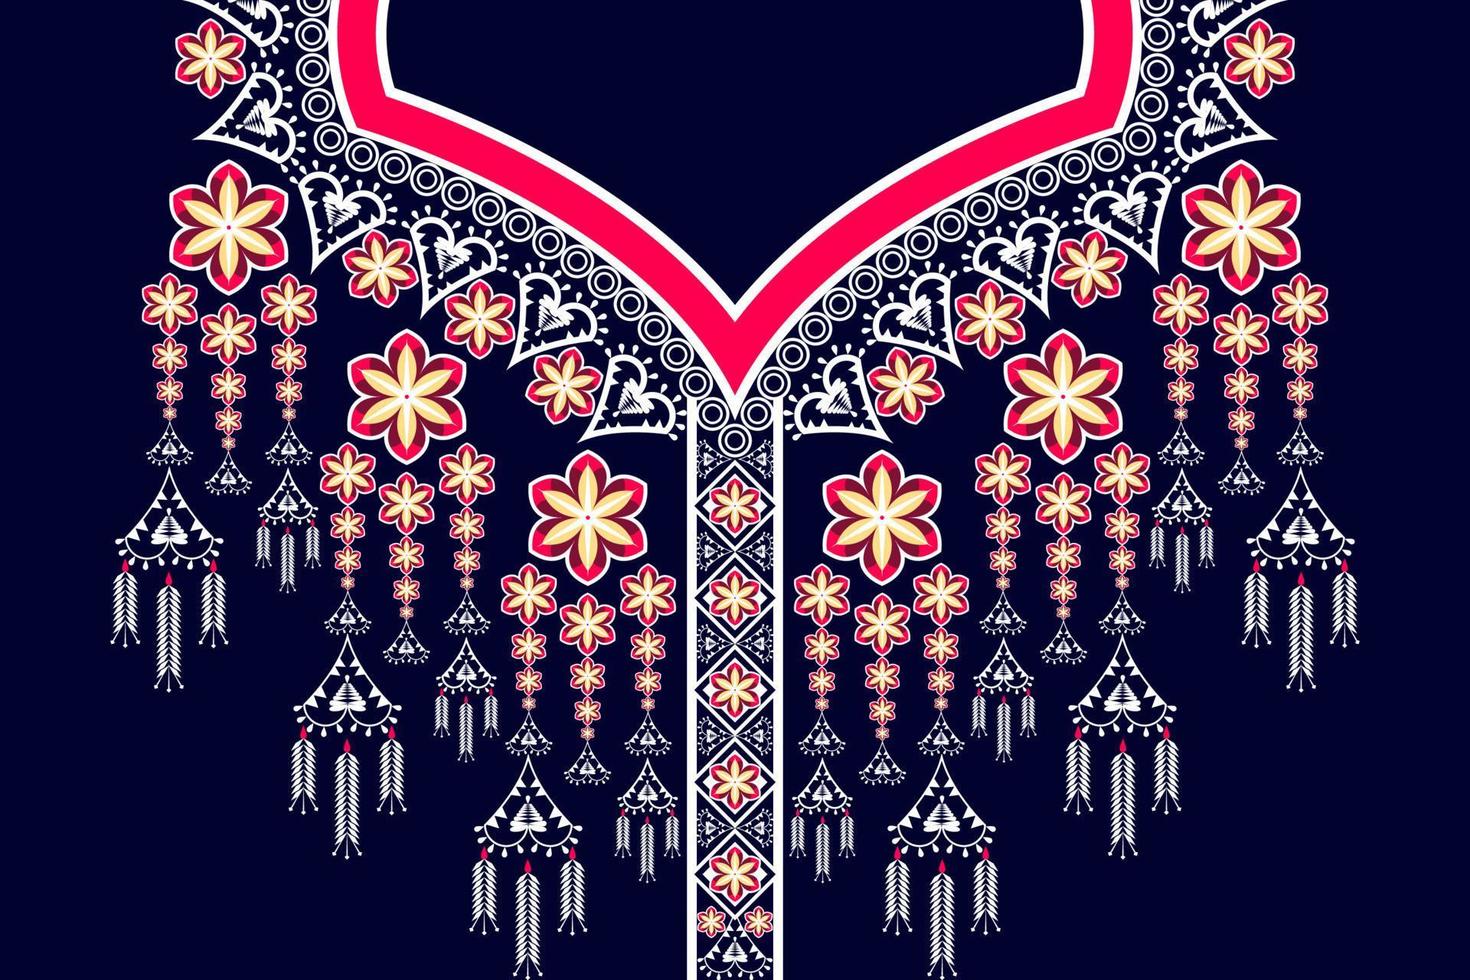 padrões orientais geométricos desenhos de bordados de colar de flores tradicionais étnicas para fundos de moda feminina, papéis de parede, roupas e envoltórios. vetor